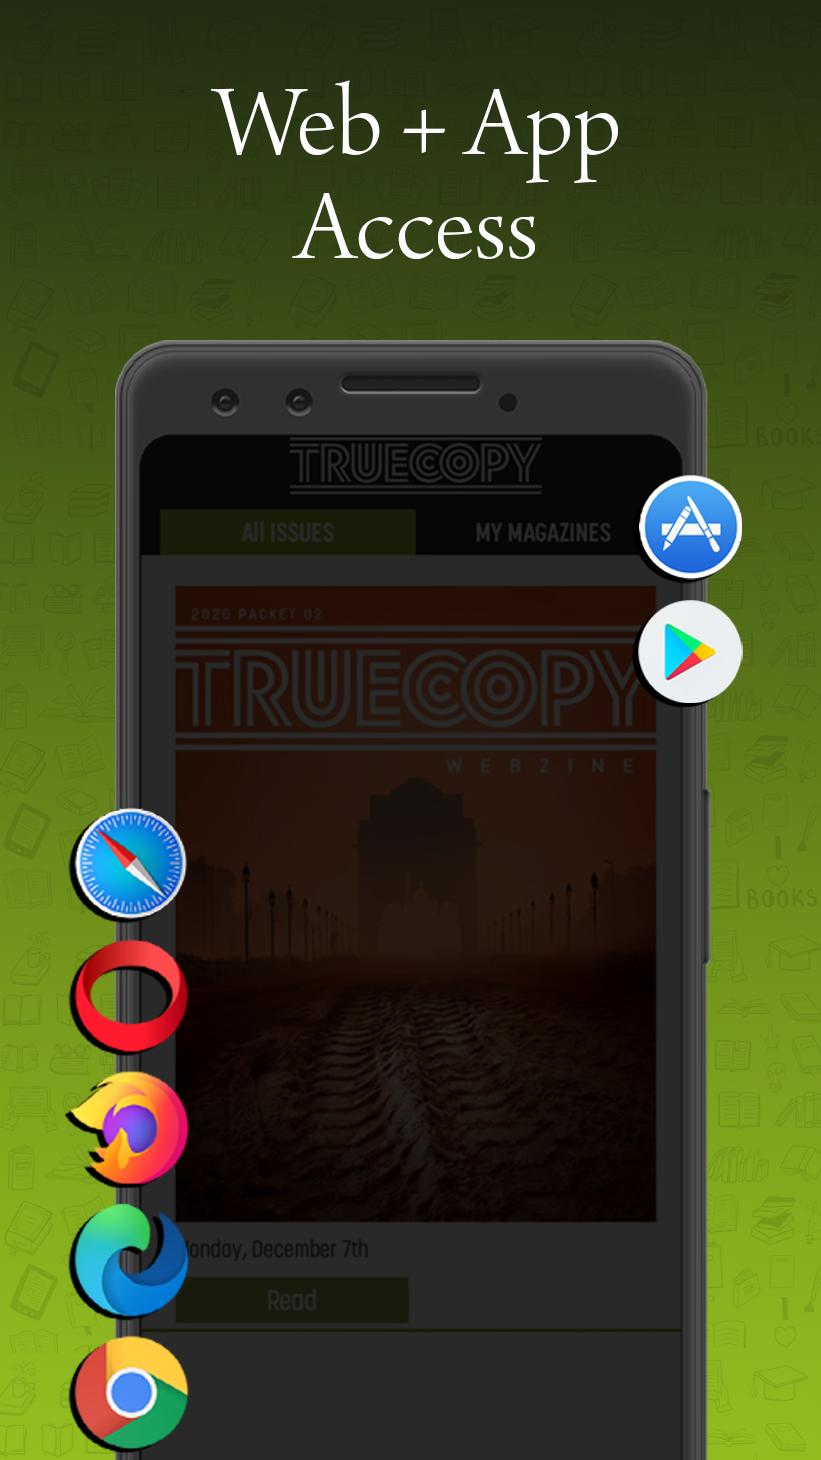 Truecopy Webzine 2.6 Screenshot 20